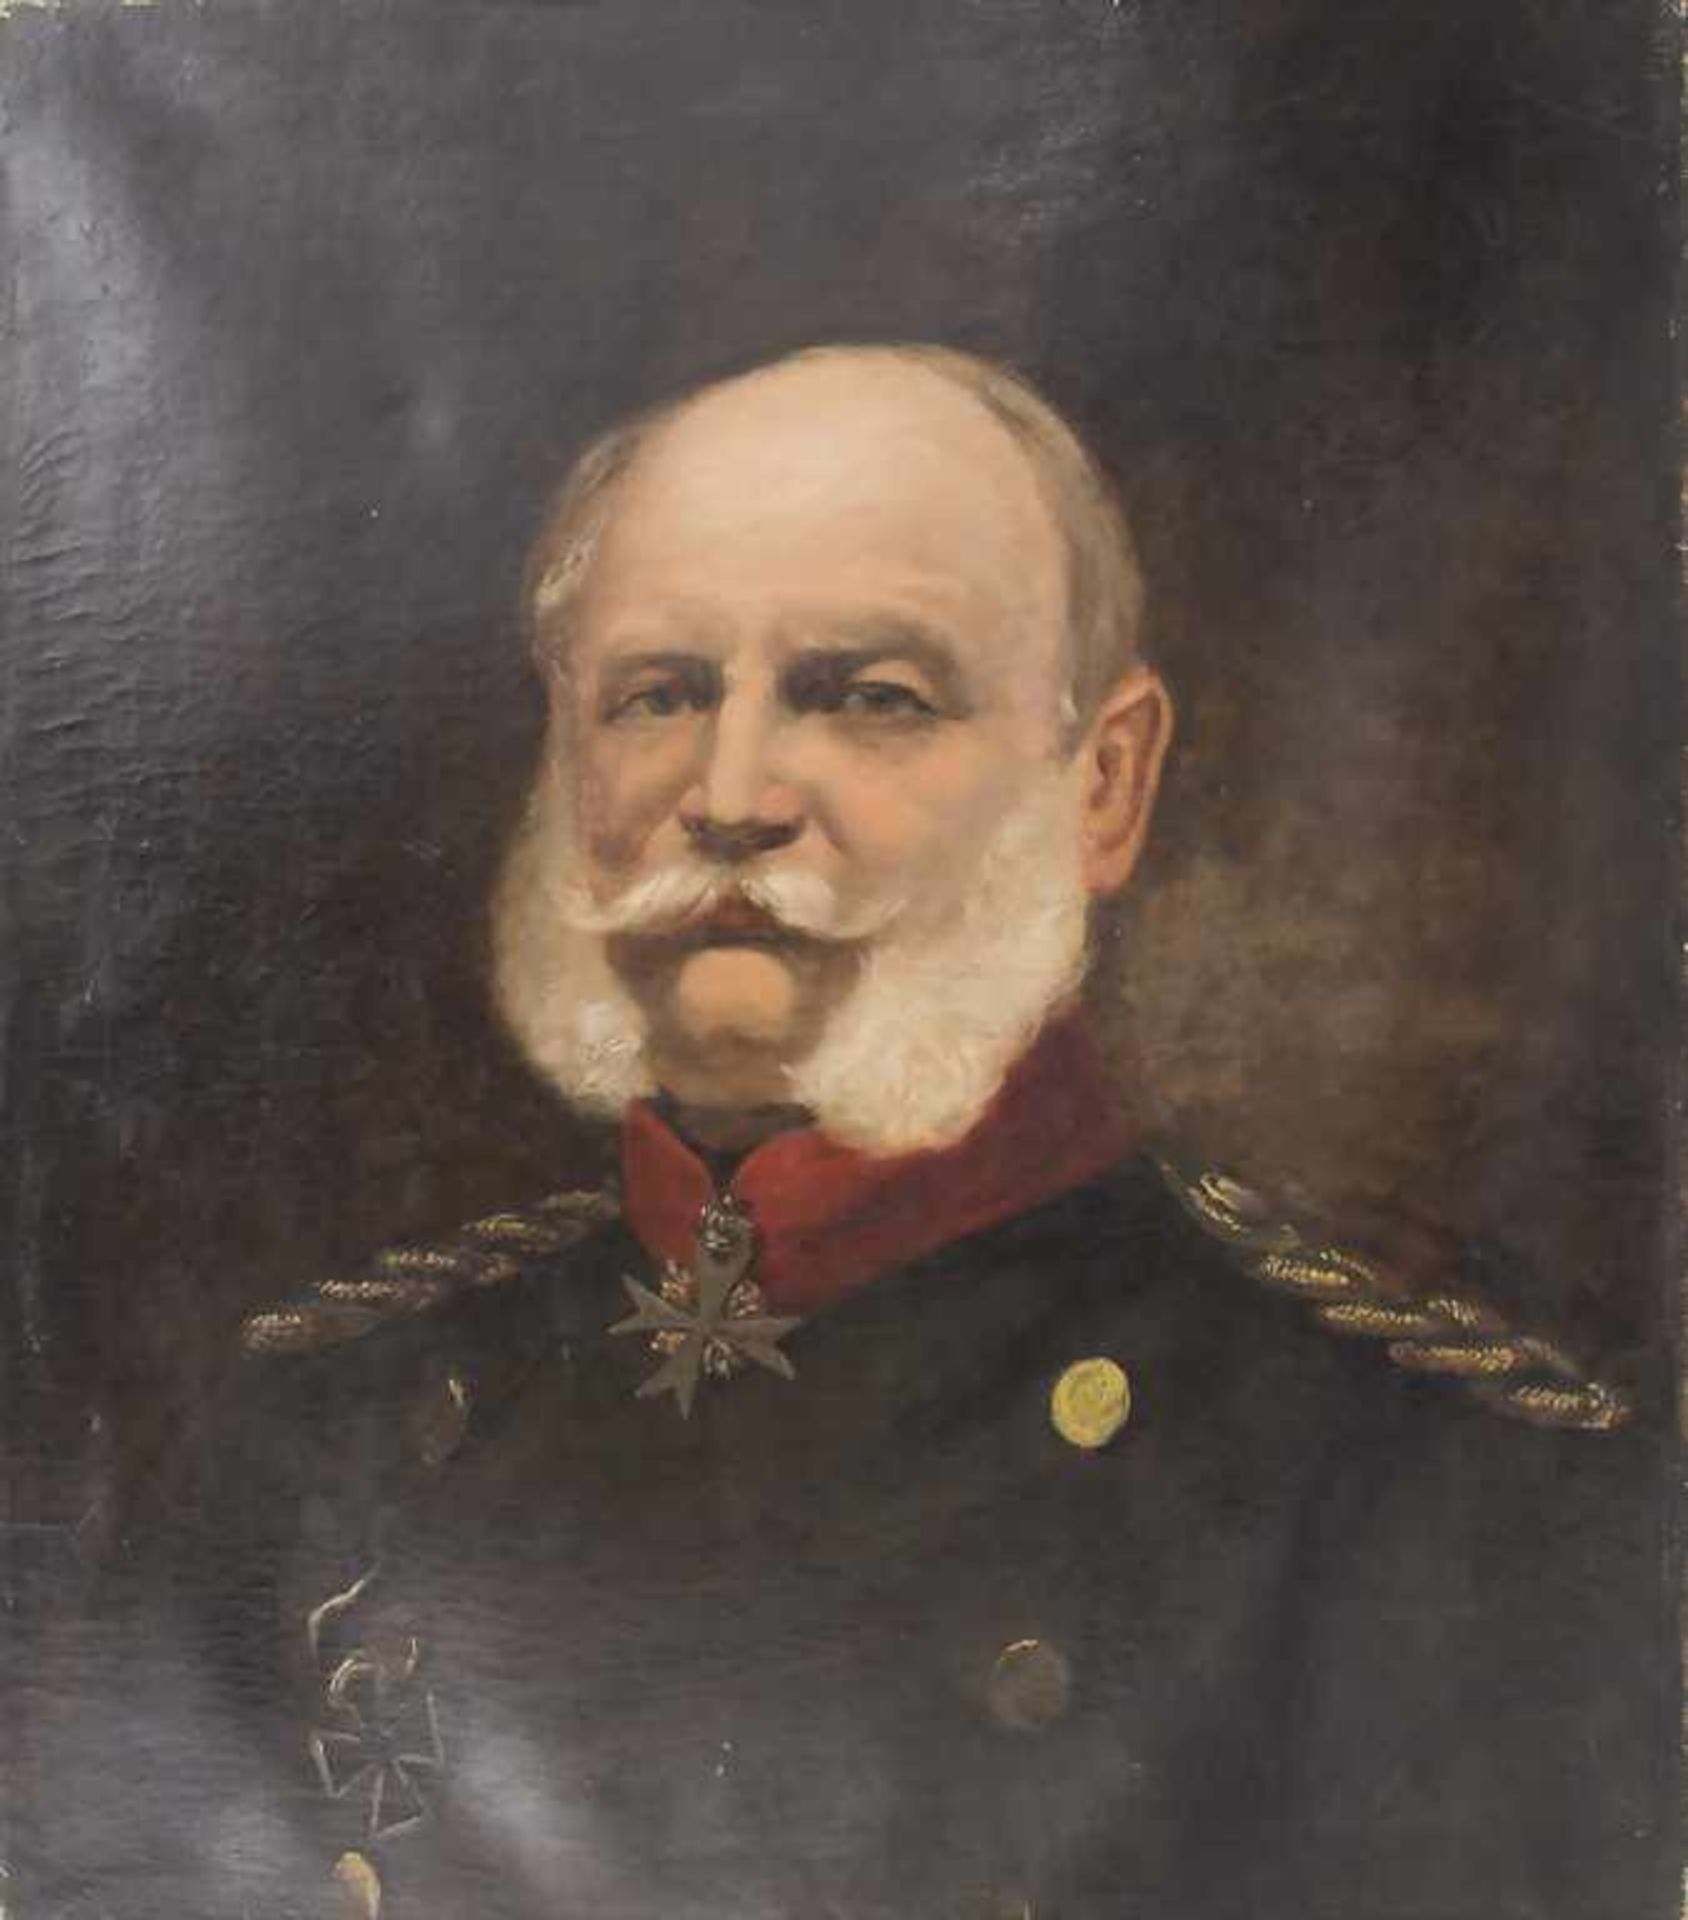 Künstler des 19. Jh., 'Porträt Wilhelm I' / 'A portrait of Wilhelm I'